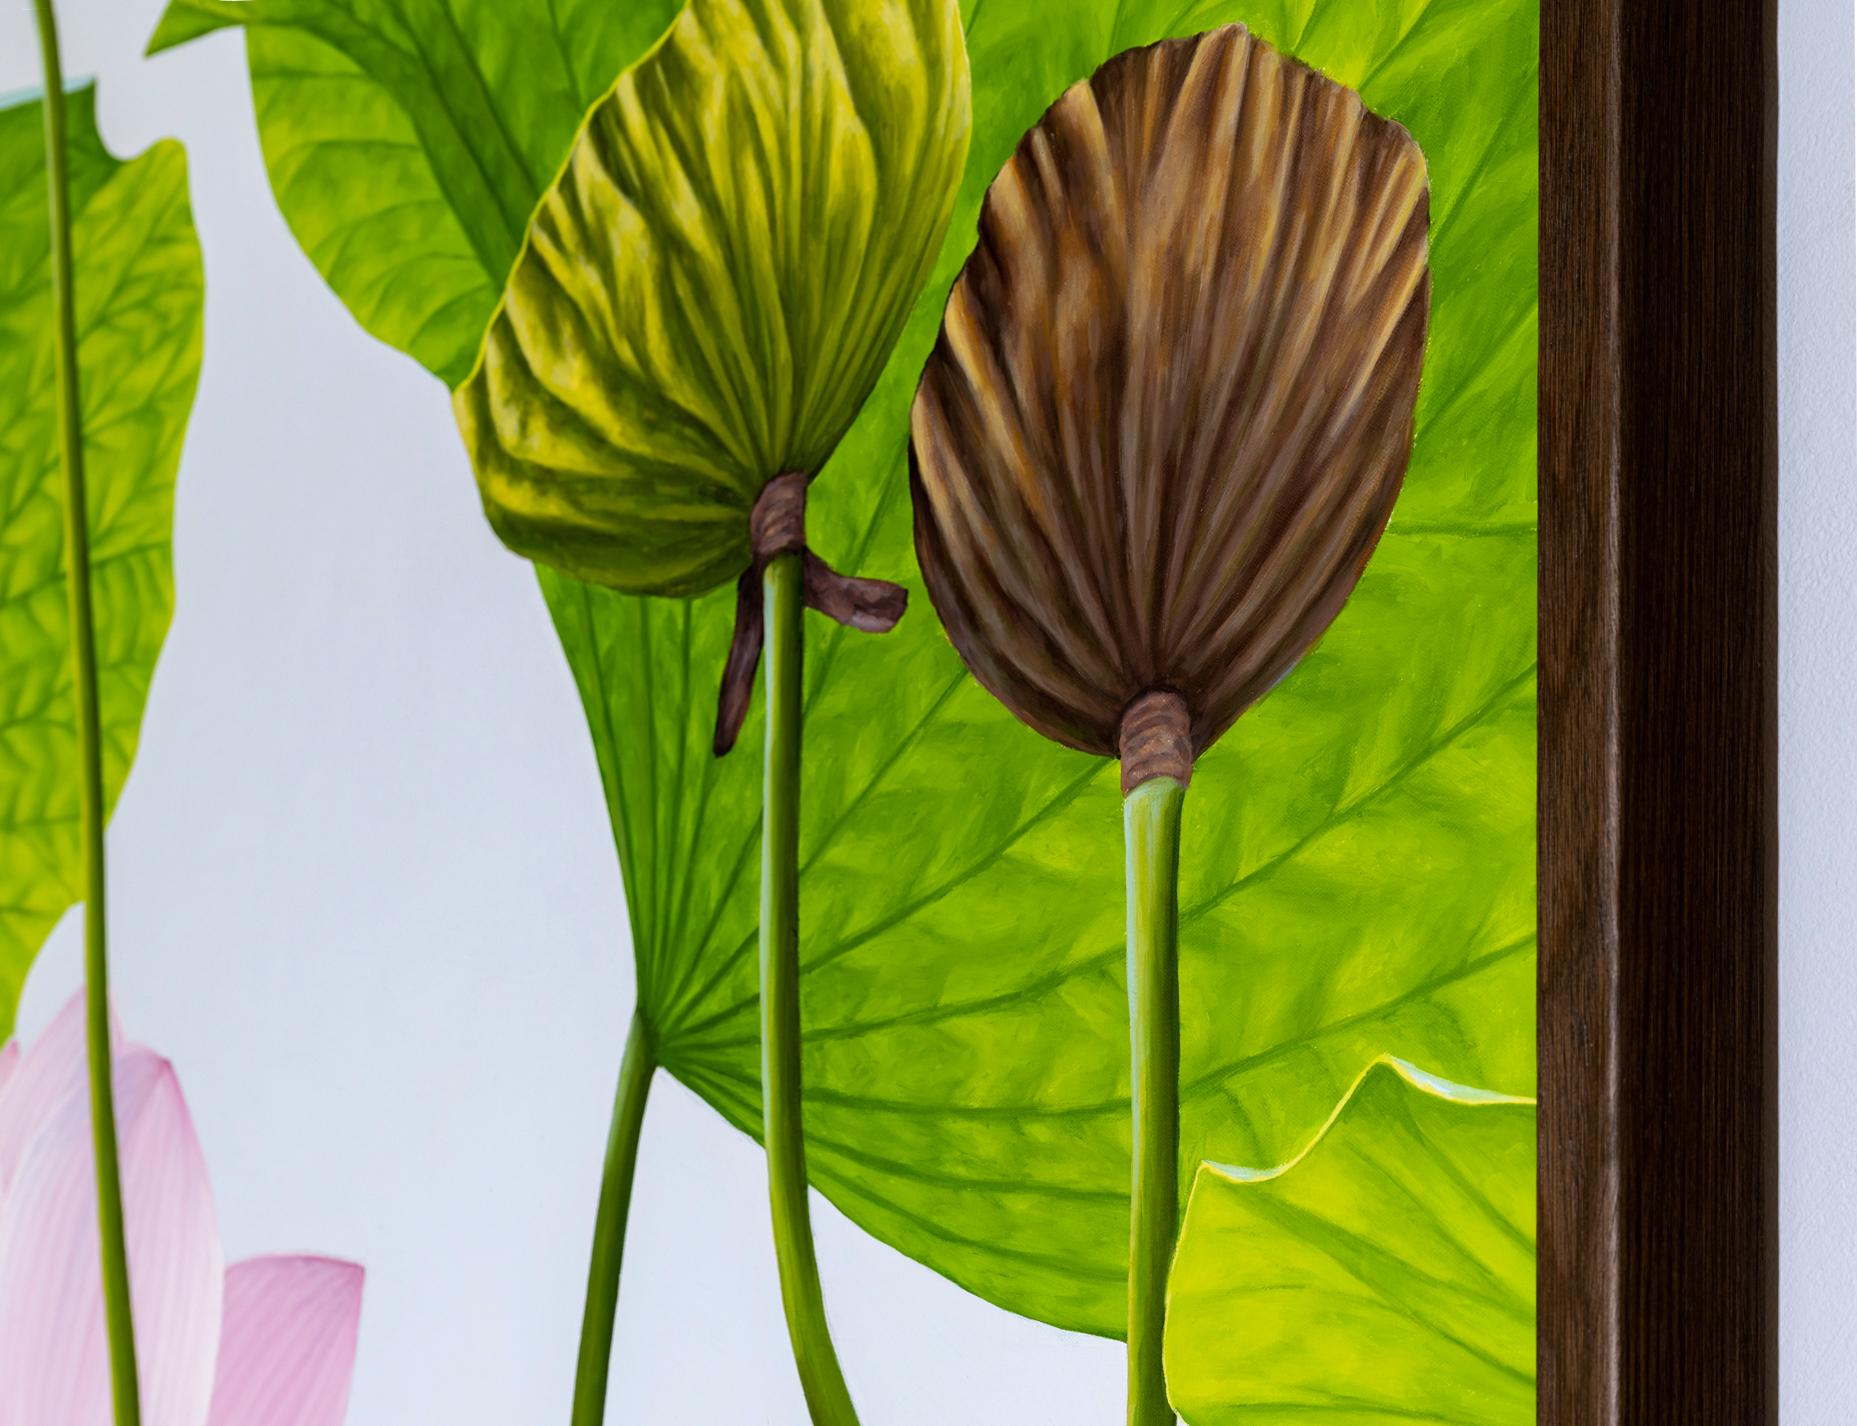 Nature morte photoréaliste sur toile d'une fleur de lotus rose clair avec des cosses de lotus brunes et des pétales verts sur un fond gris clair
